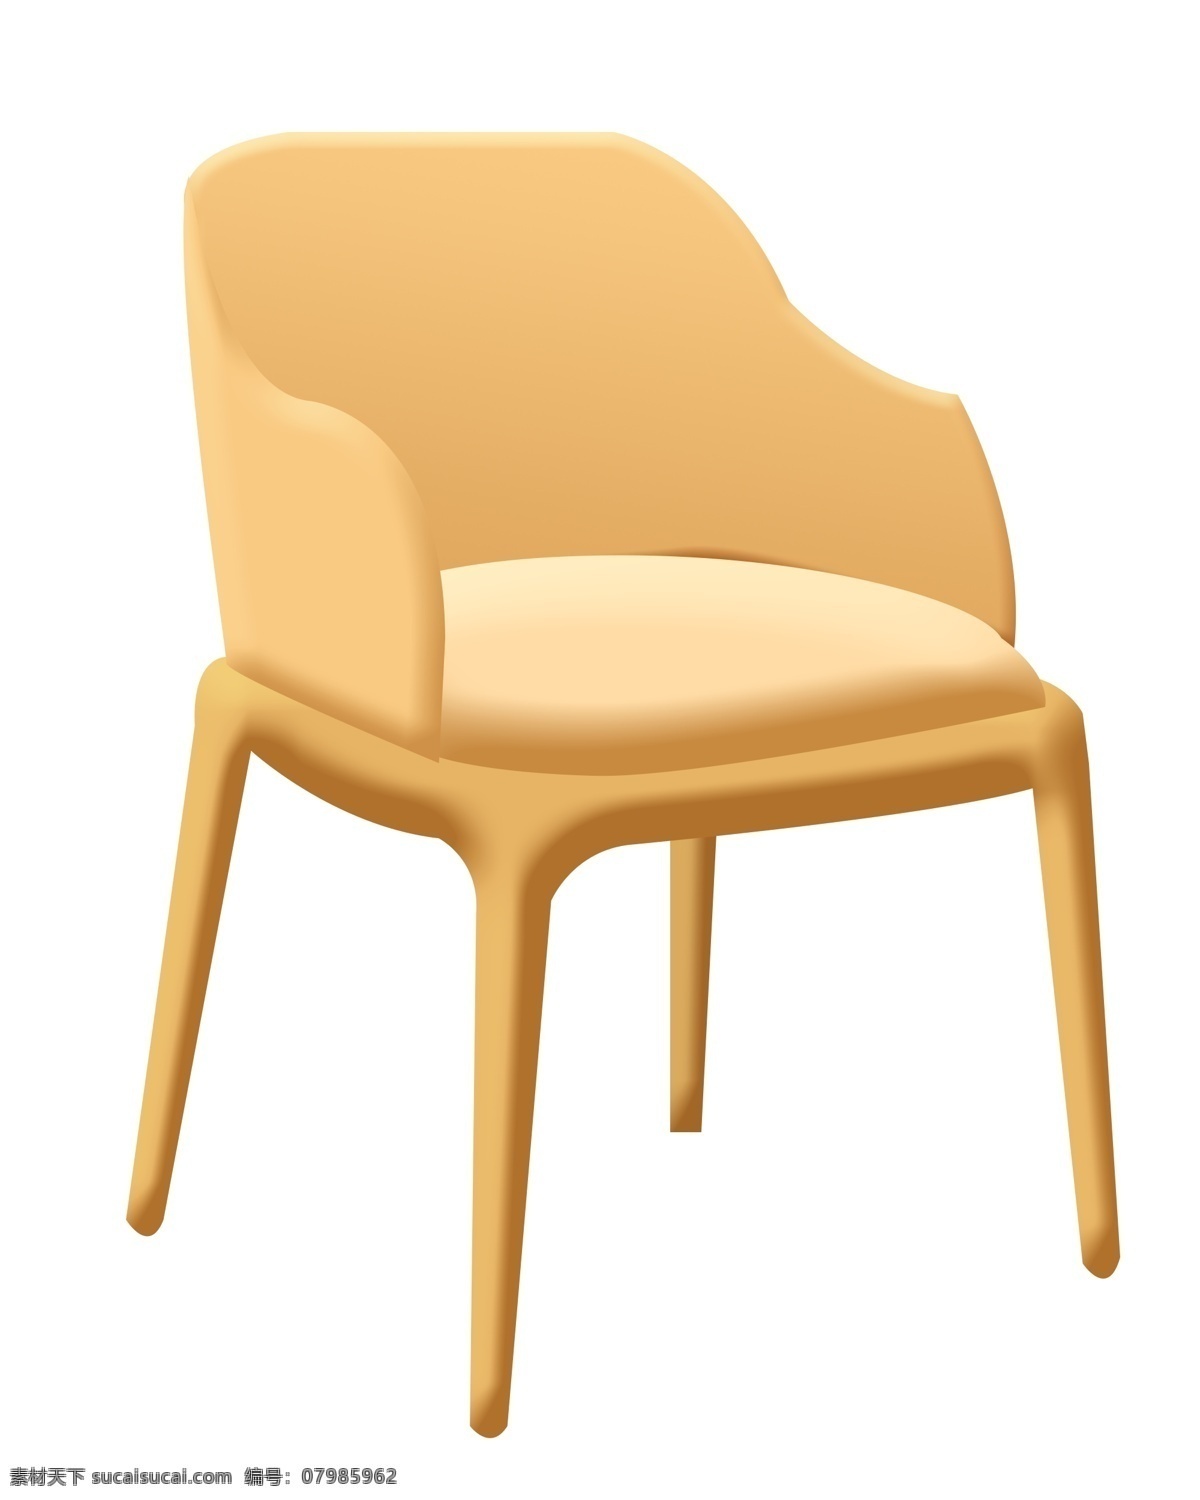 黄色 靠背 椅子 插图 卡通椅子 家具 靠背椅子 黄色椅子 靠背椅子插图 黄色靠背椅子 黄色家具